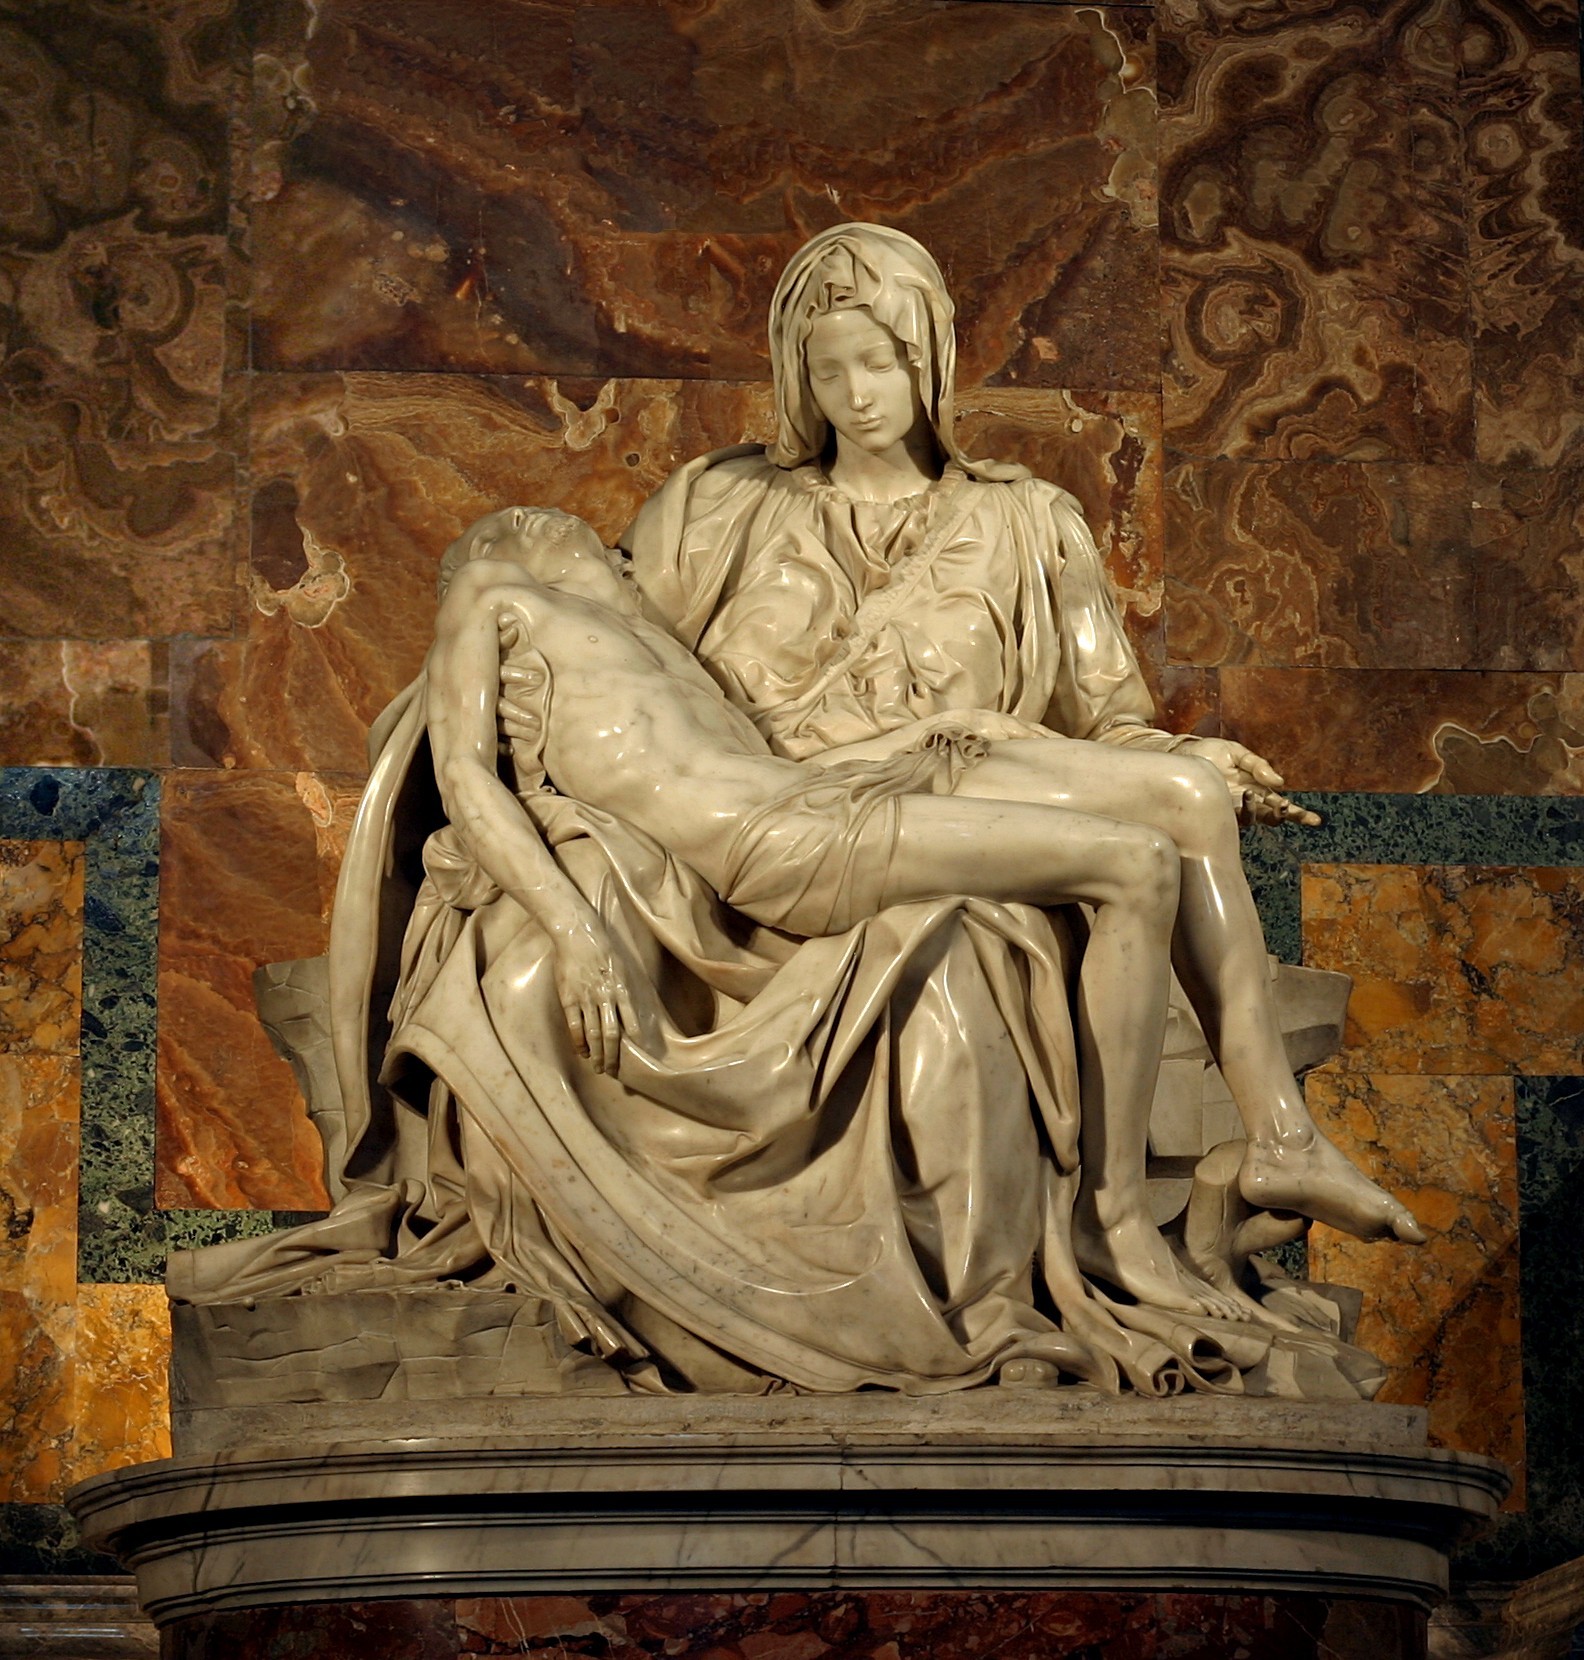 Pieta by  Michelangelo - 1498-99 - 1,74 m x 1,95 m 